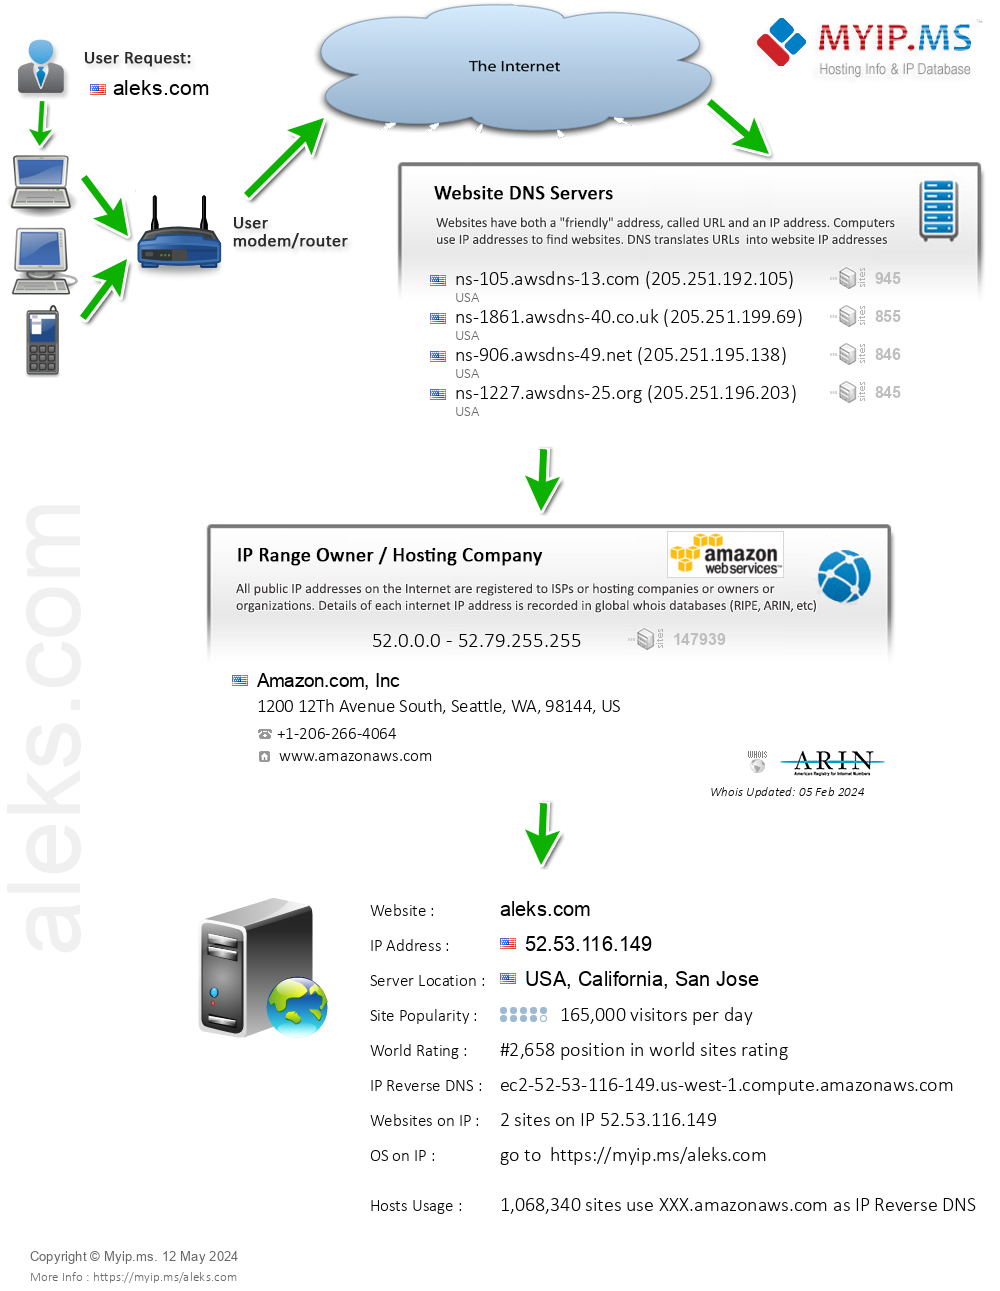 Aleks.com - Website Hosting Visual IP Diagram